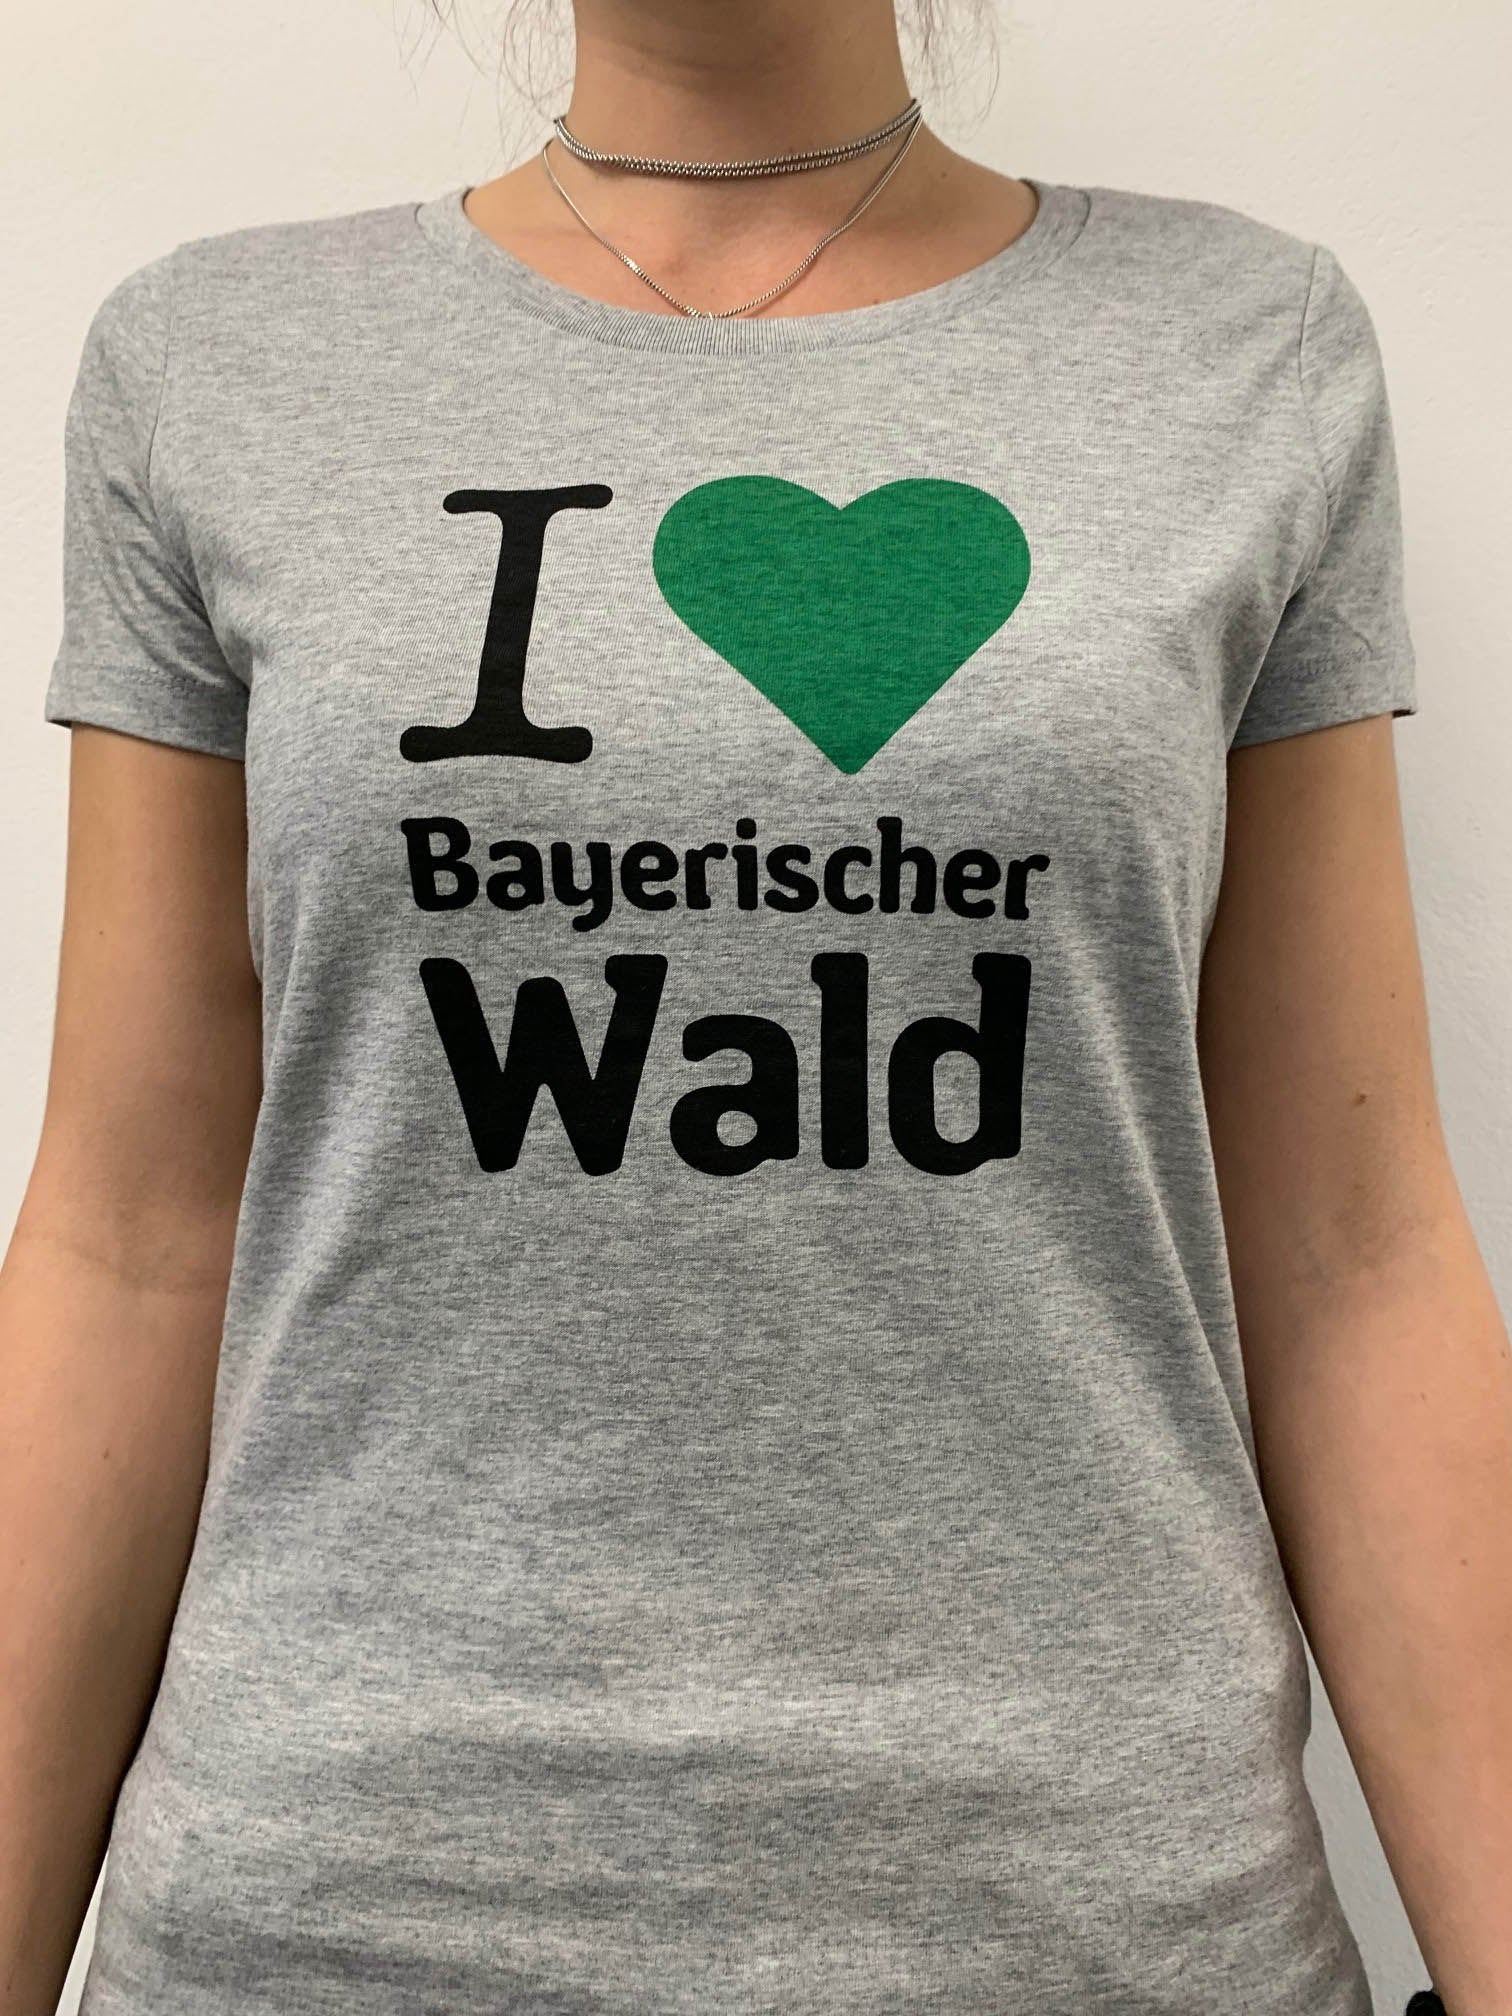 Bayerischer wald "I <3 Bayerischer Wald" ICONIC BIO T-Shirt damen